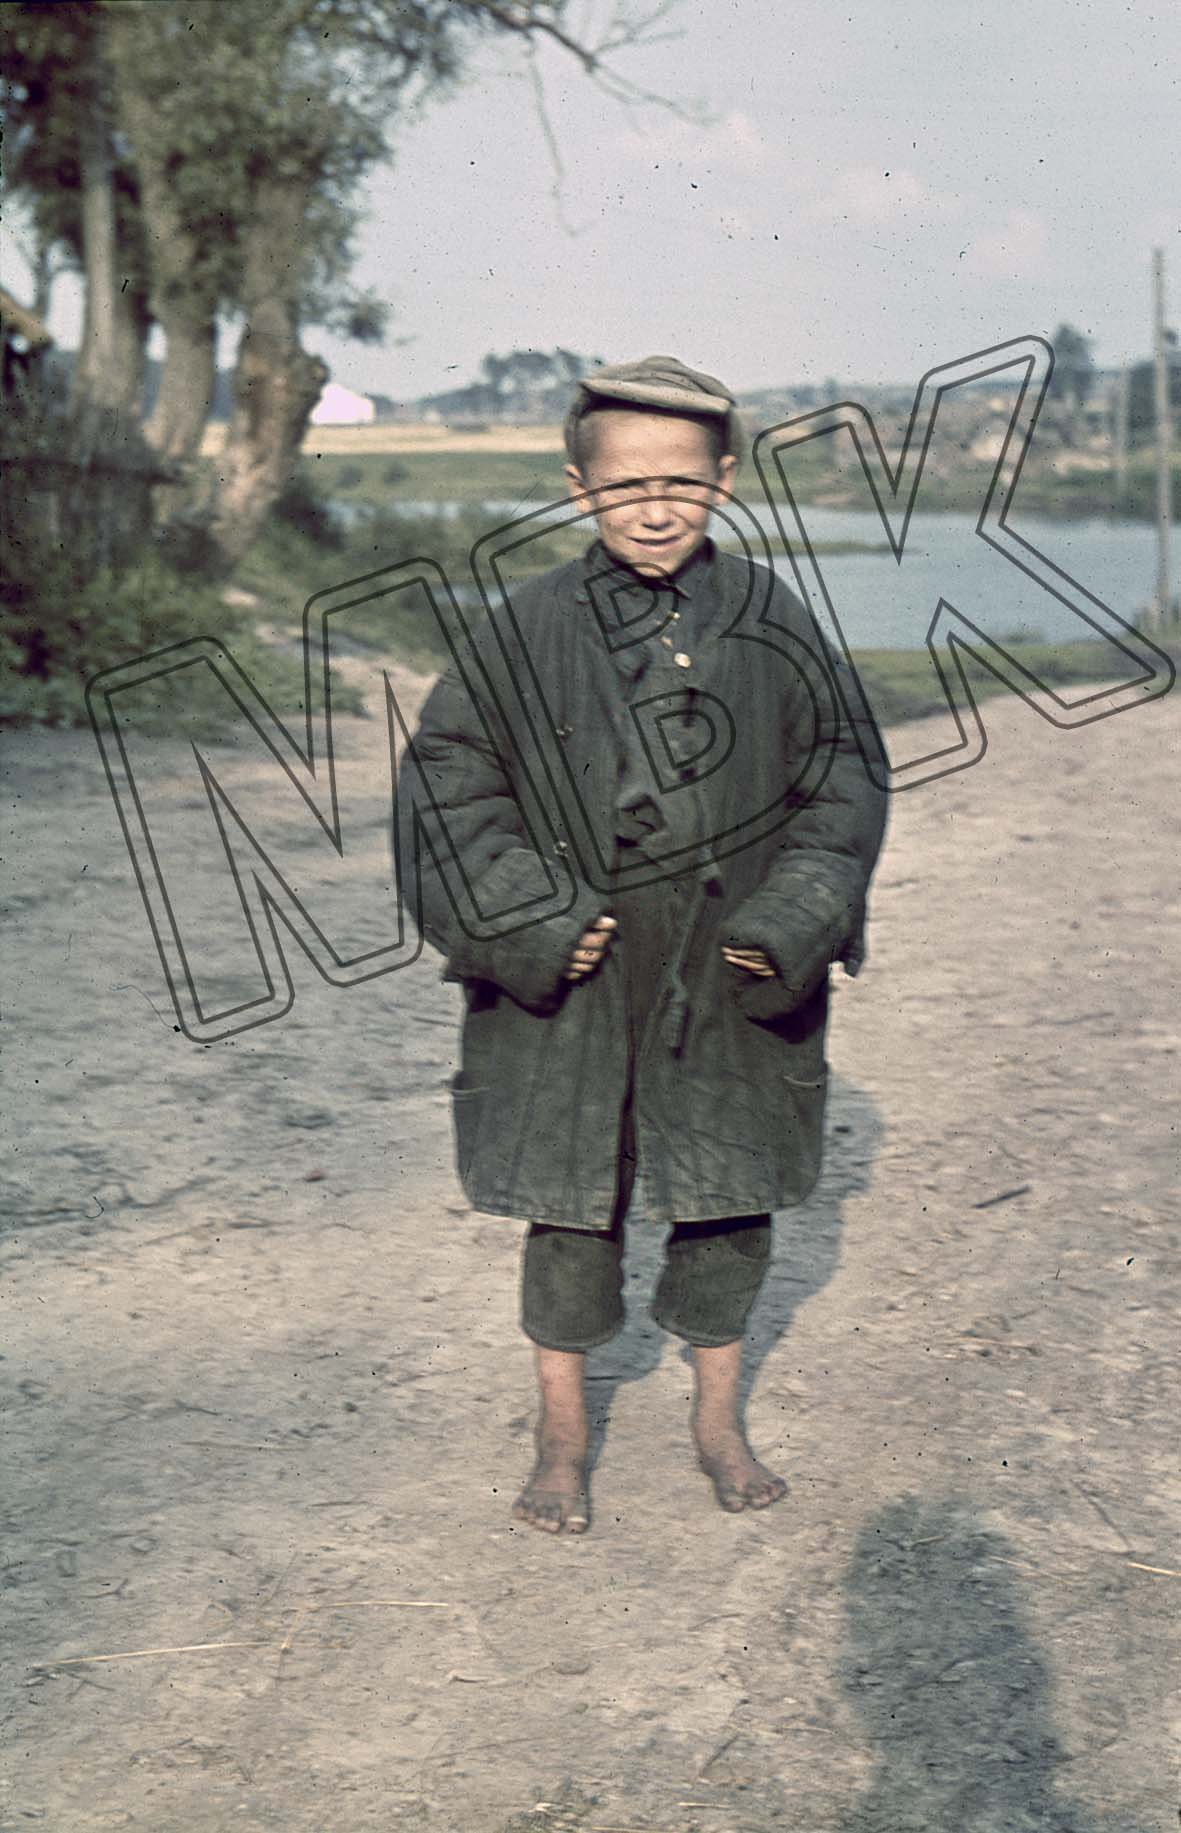 Fotografie: Porträt eines kleinen Jungen, Orscha, August 1941 (Museum Berlin-Karlshorst RR-P)